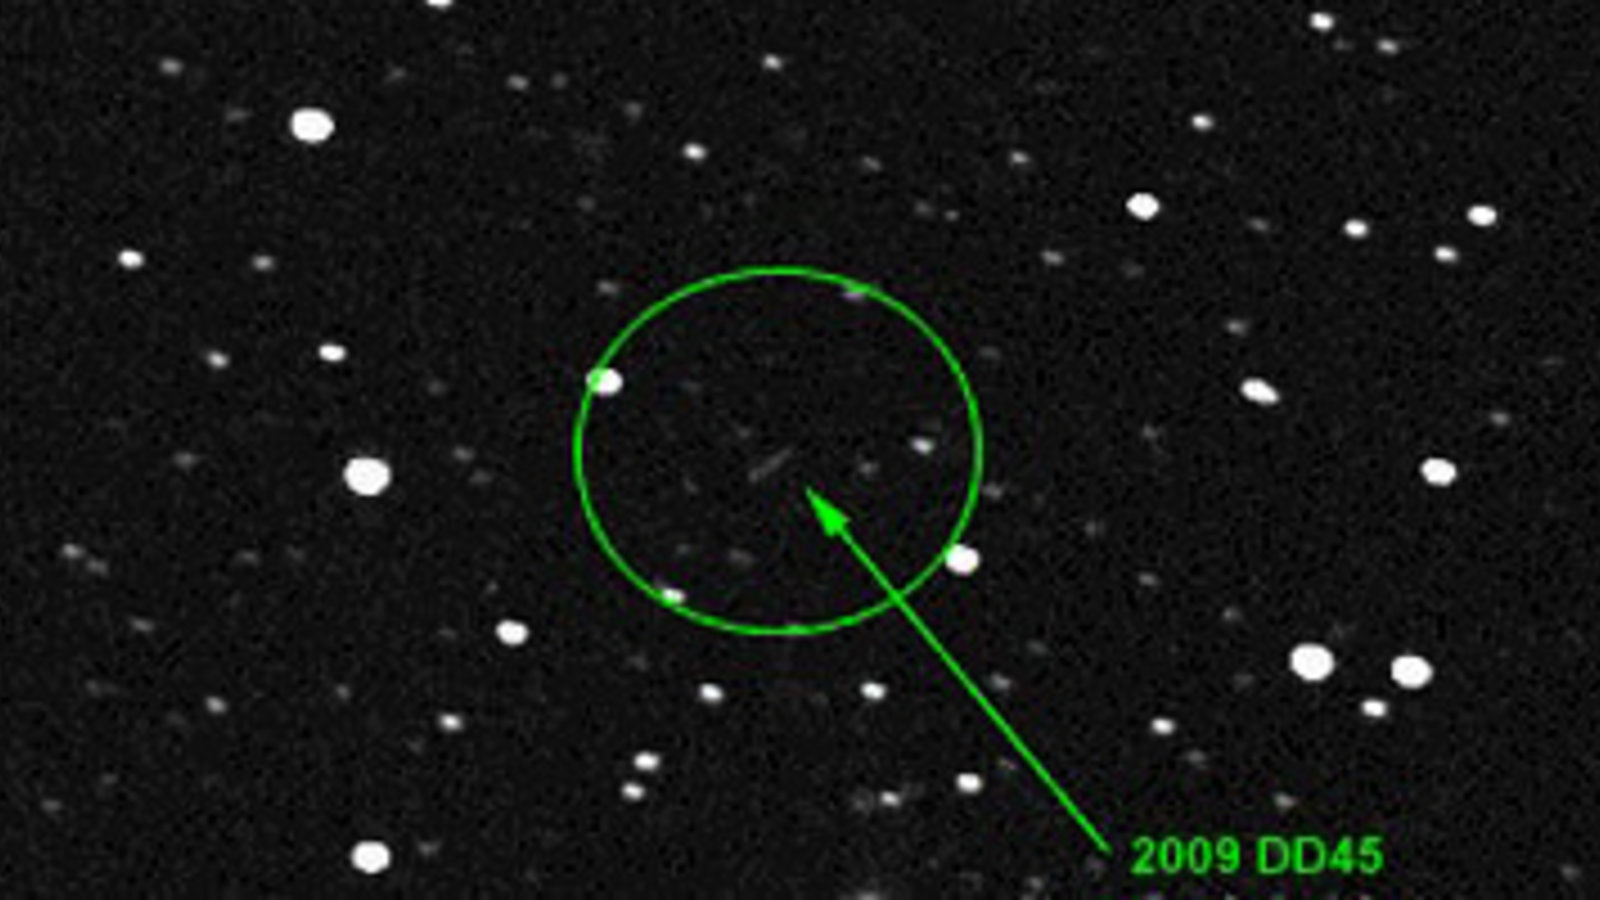 asteroid_2009_dd45.jpg